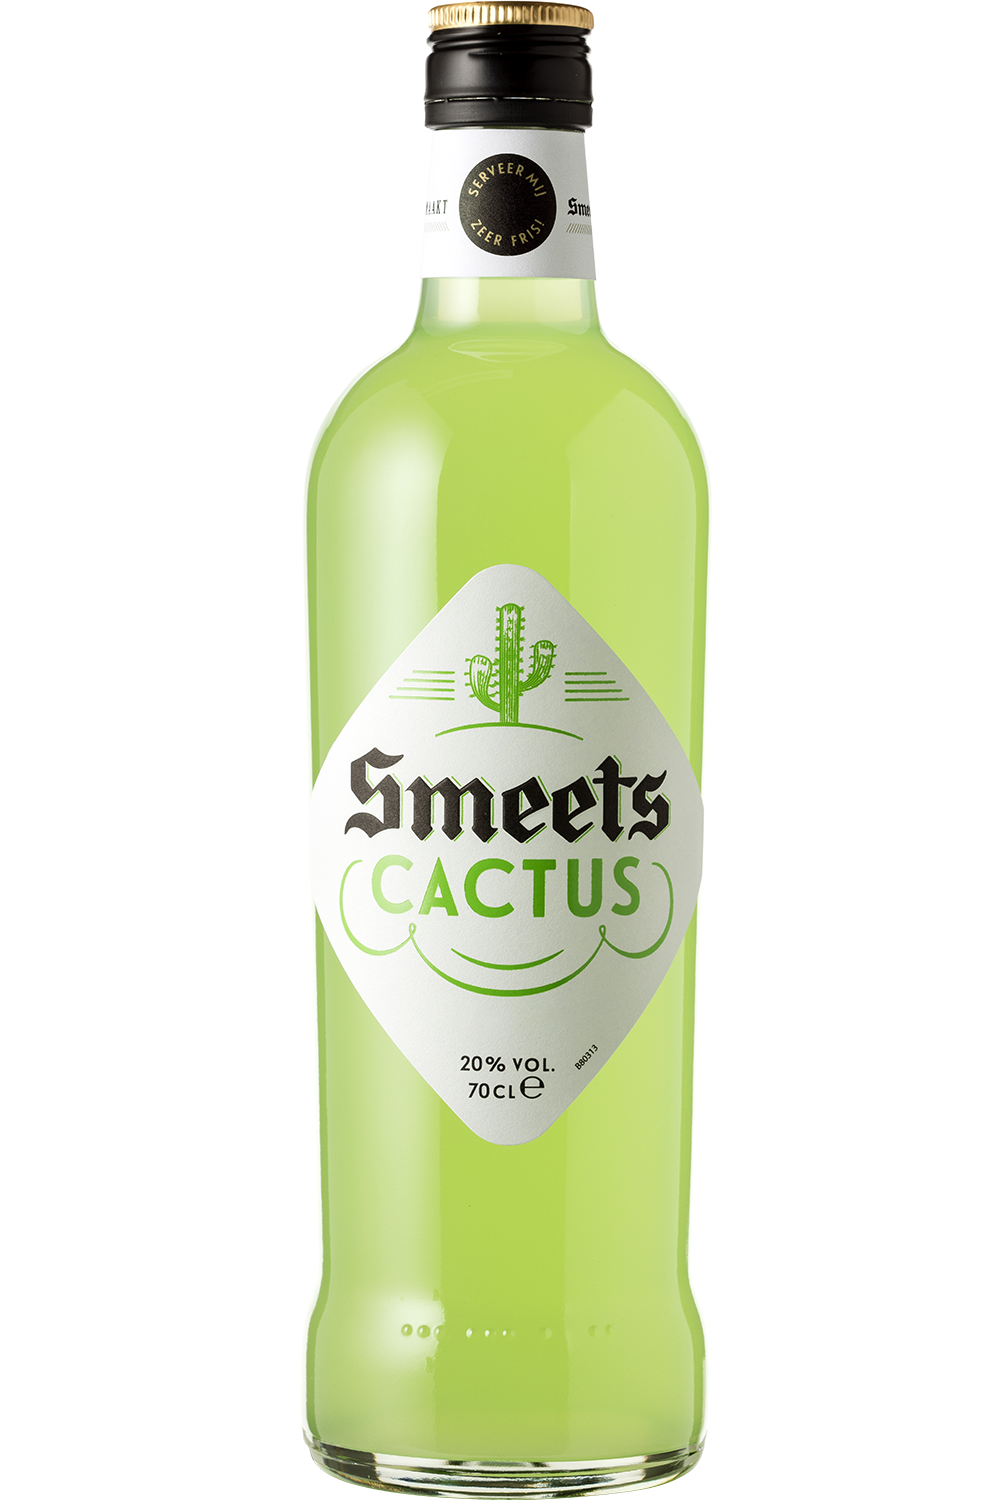 Smeets Cactus 